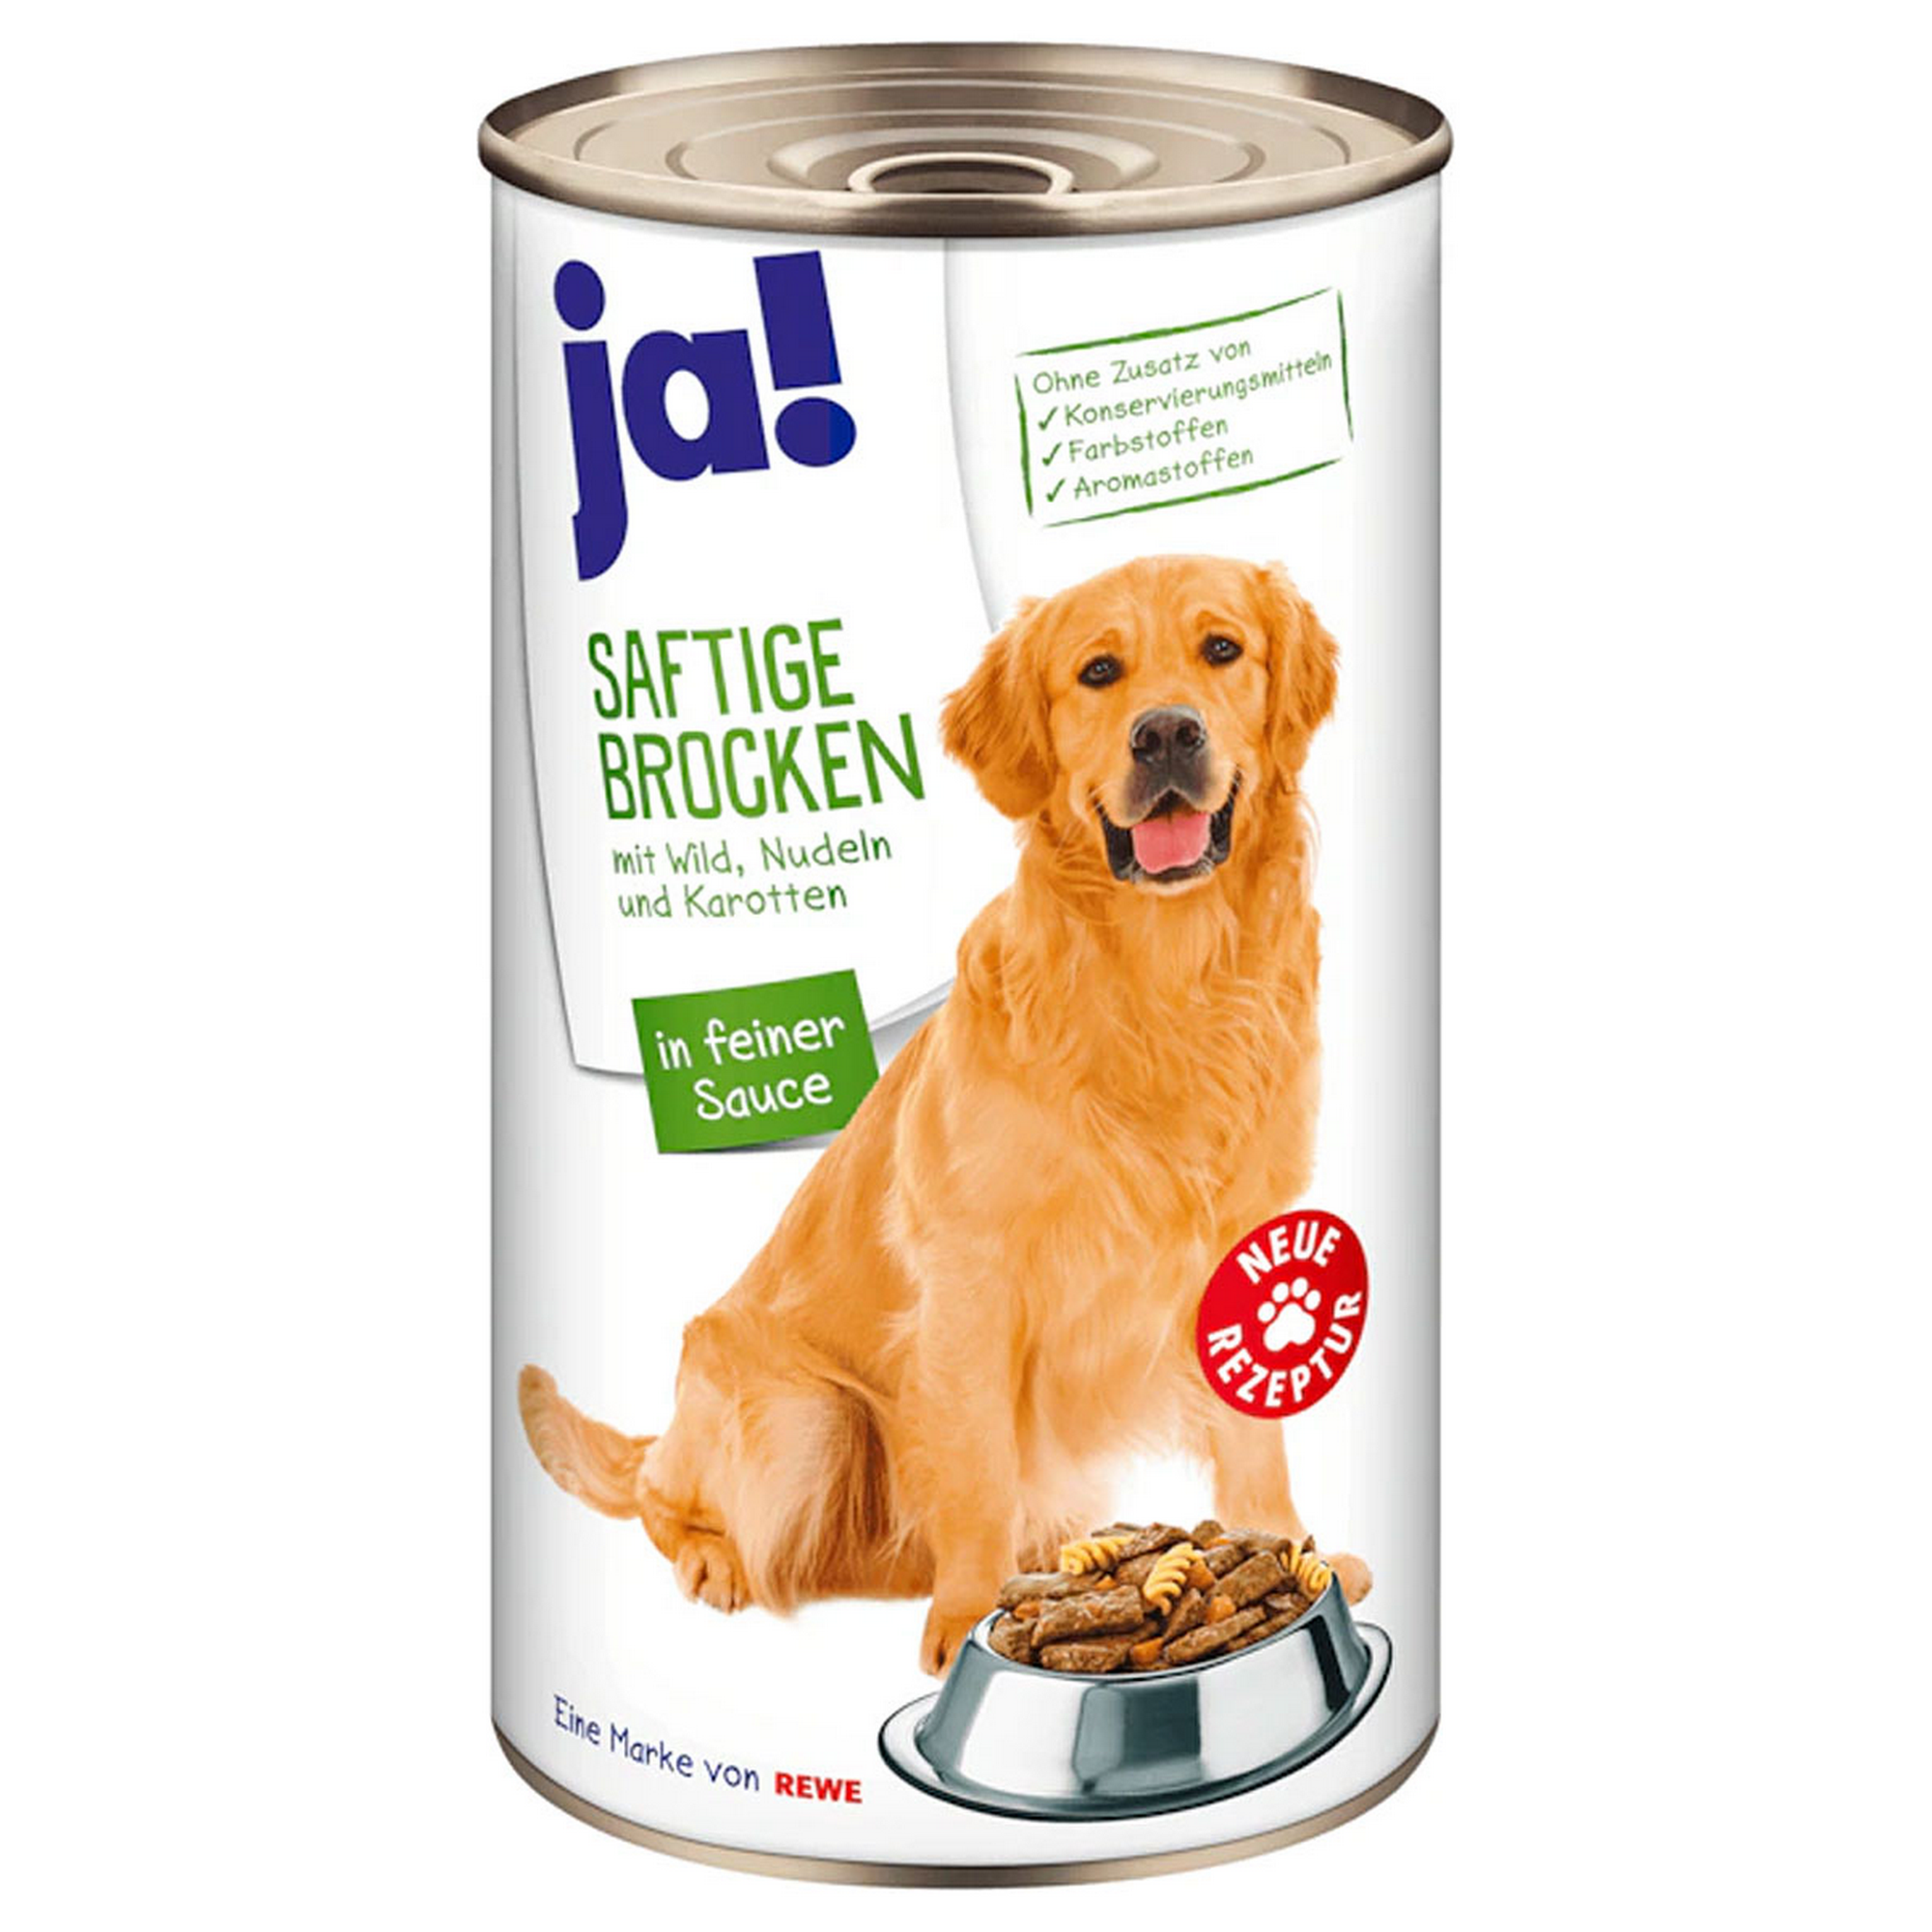 Hundenassfutter 'saftige Brocken' mit Wild, Nudeln und Karotten, 1240 g + product picture